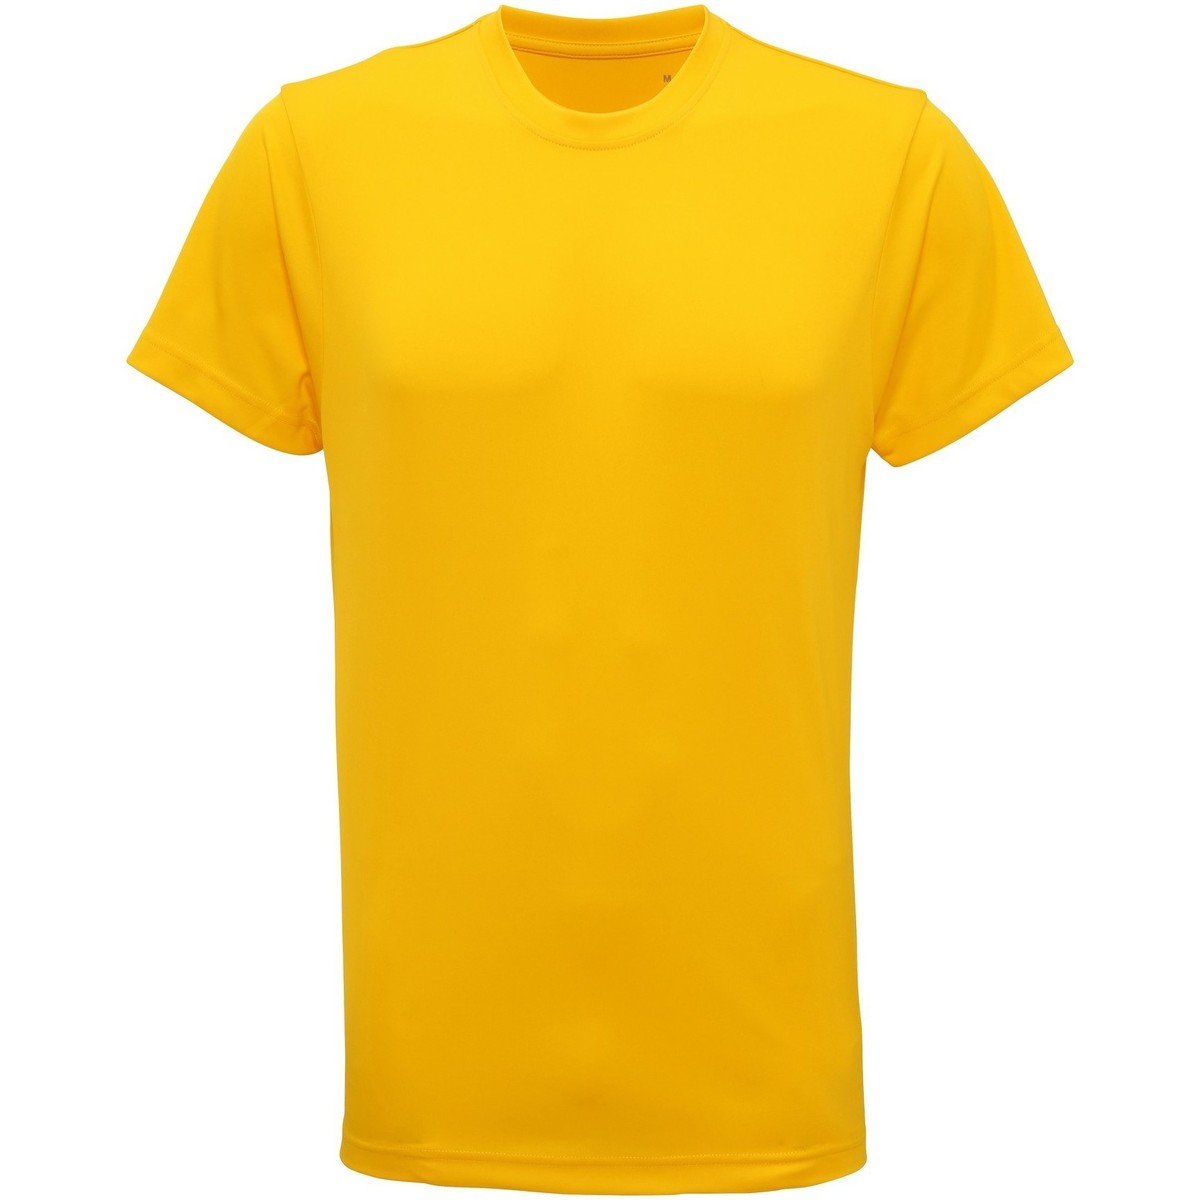 Vêtements Homme T-shirts manches courtes Tridri TR010 Multicolore